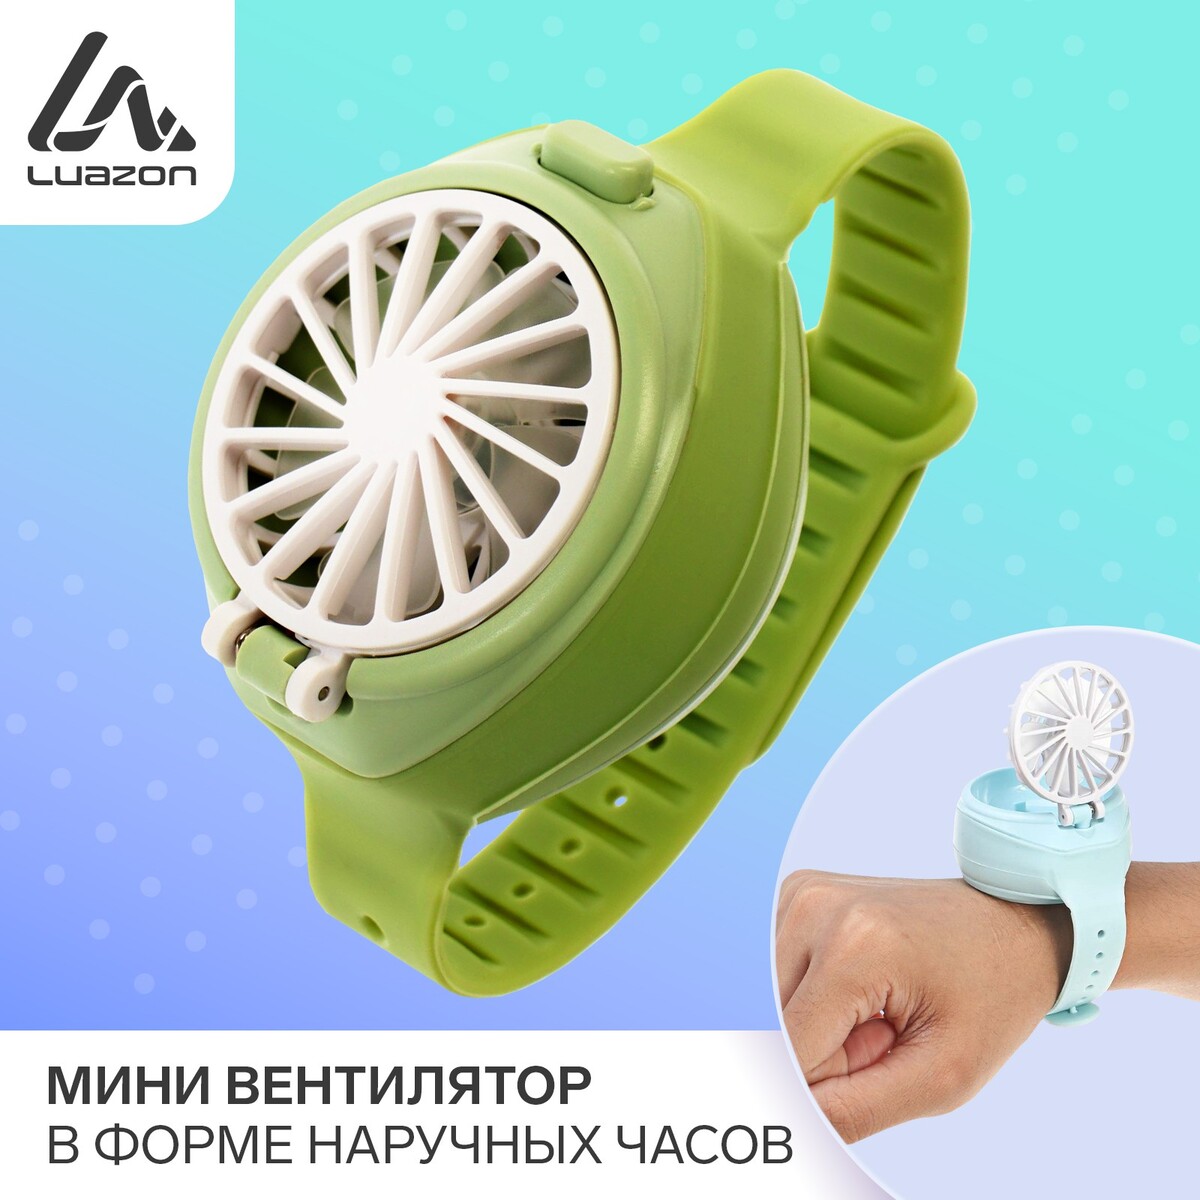 Мини вентилятор в форме наручных часов lof-10, 3 скорости, поворотный, зеленый 